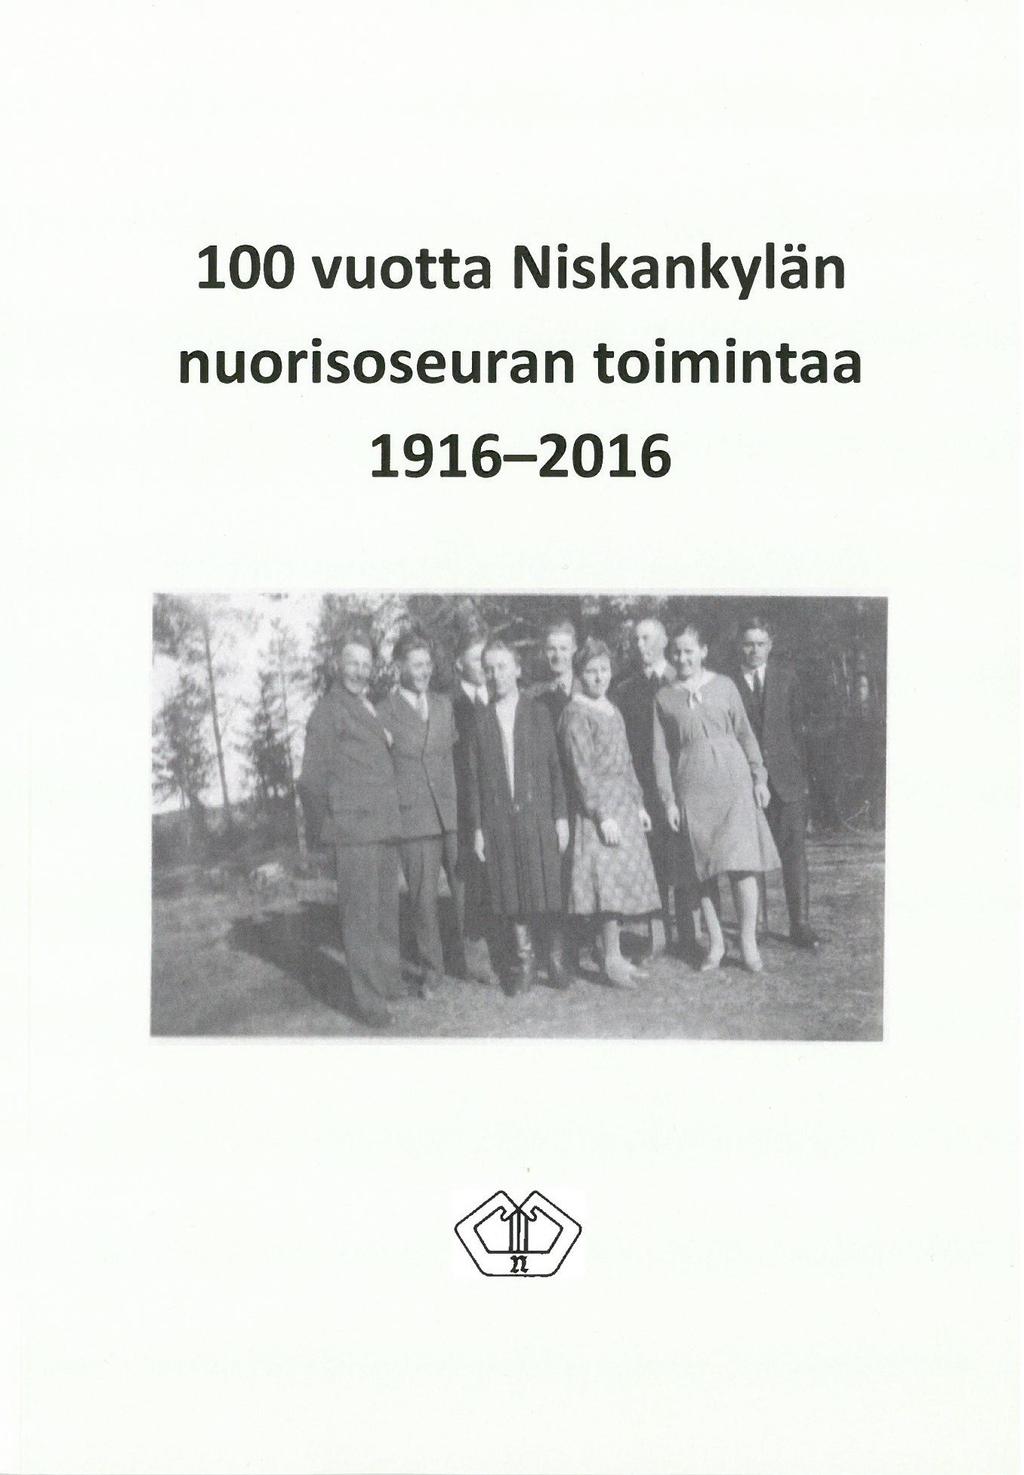 Anna-Liisa Seppänen 100 vuotta Niskankylän nuorisoseuran toimintaa 1916-2016 (Utajärven Niskankylän nuorisoseura, 2016) 90 sivua.